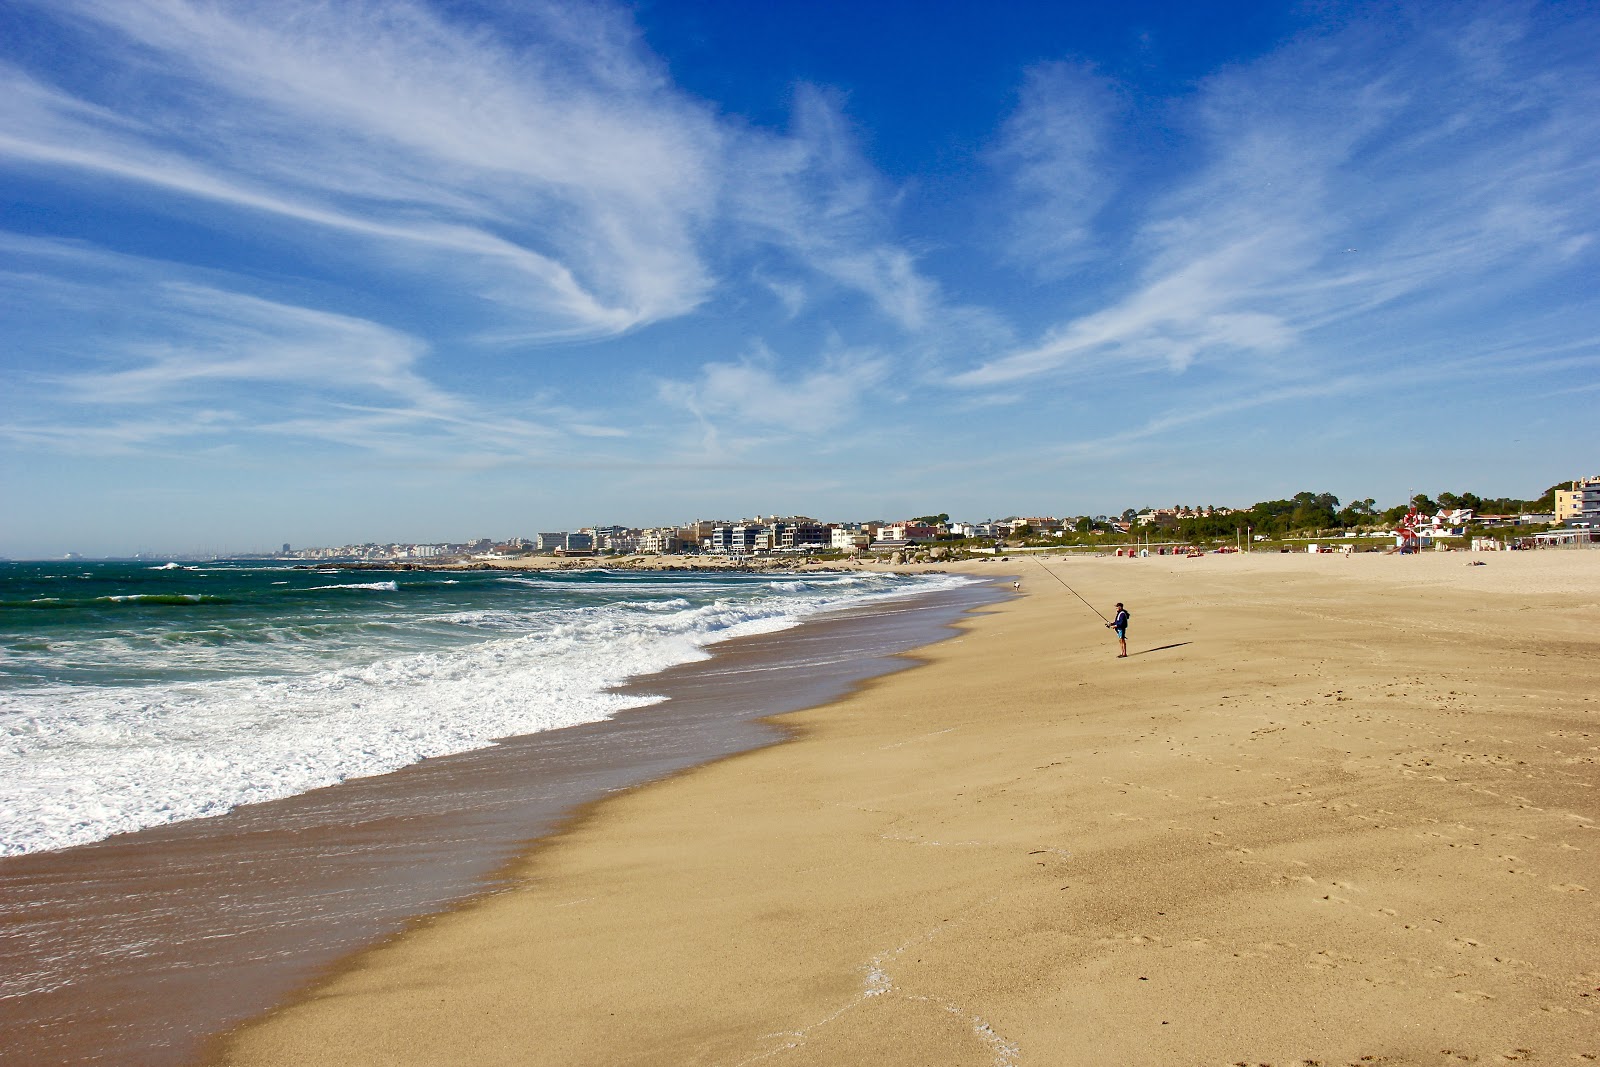 Praia da Sereia'in fotoğrafı geniş plaj ile birlikte